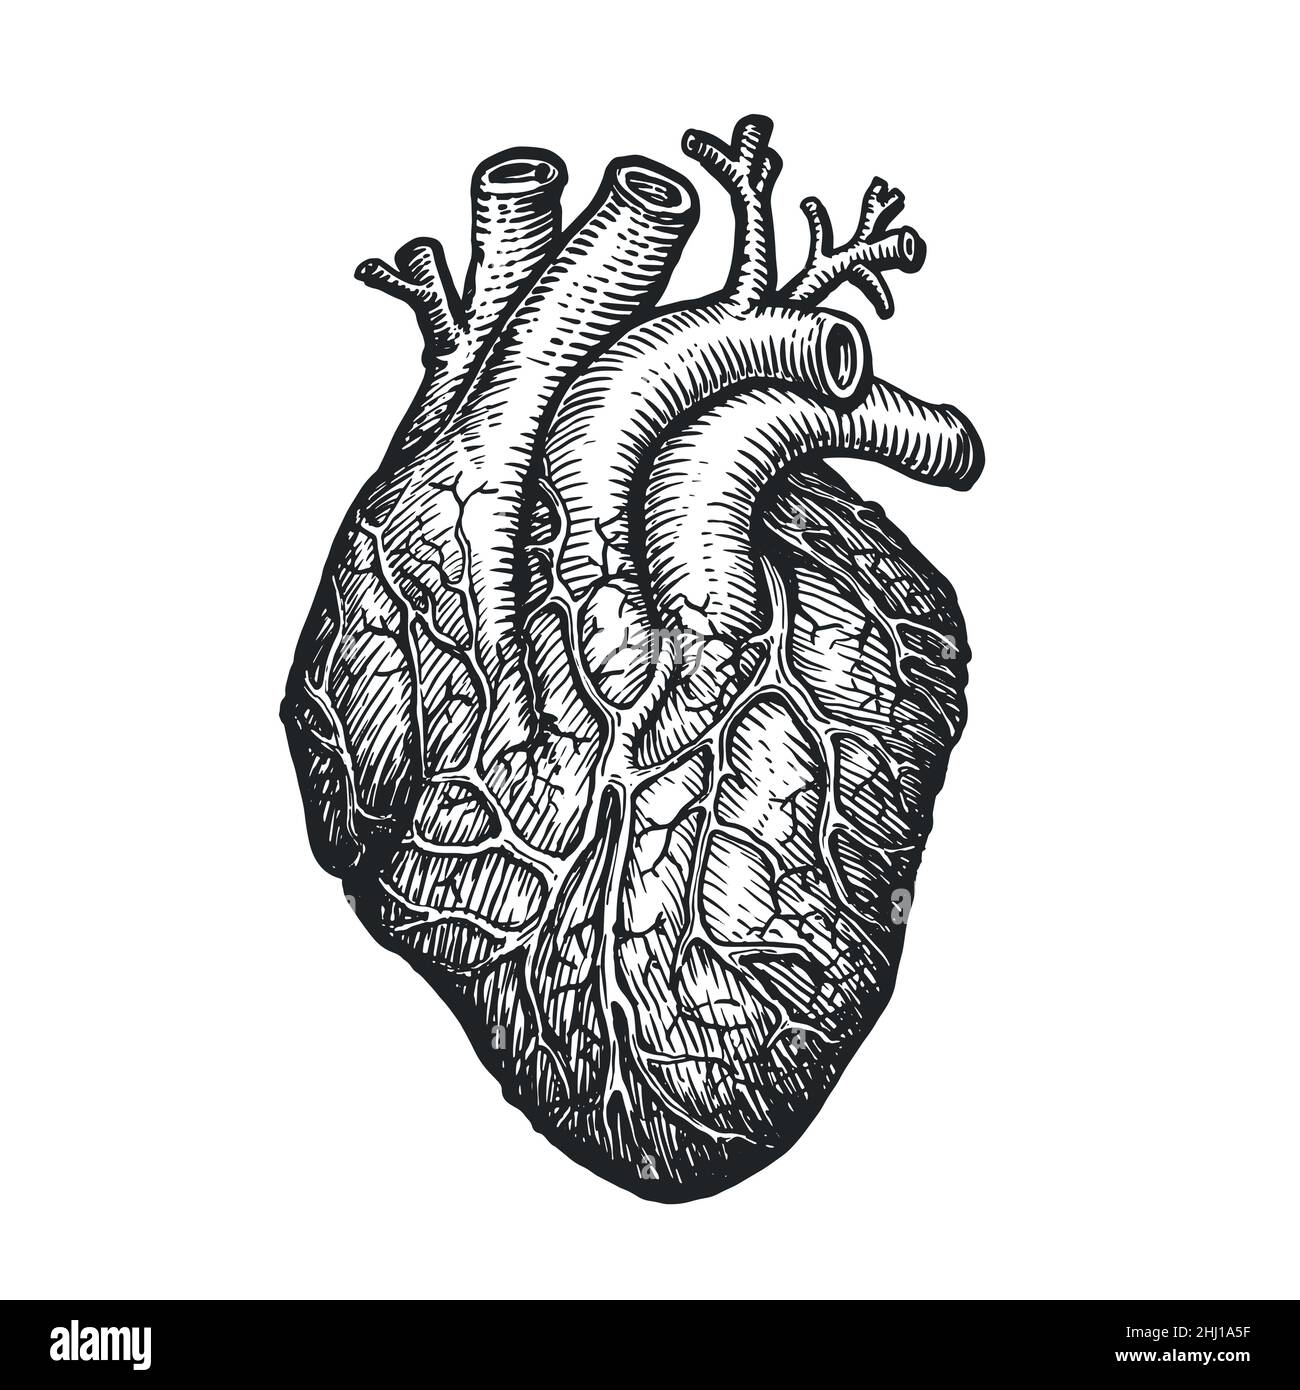 Croquis du cœur humain sur fond blanc.Organe anatomique humain tracé à la main.Illustration vectorielle gravée Illustration de Vecteur